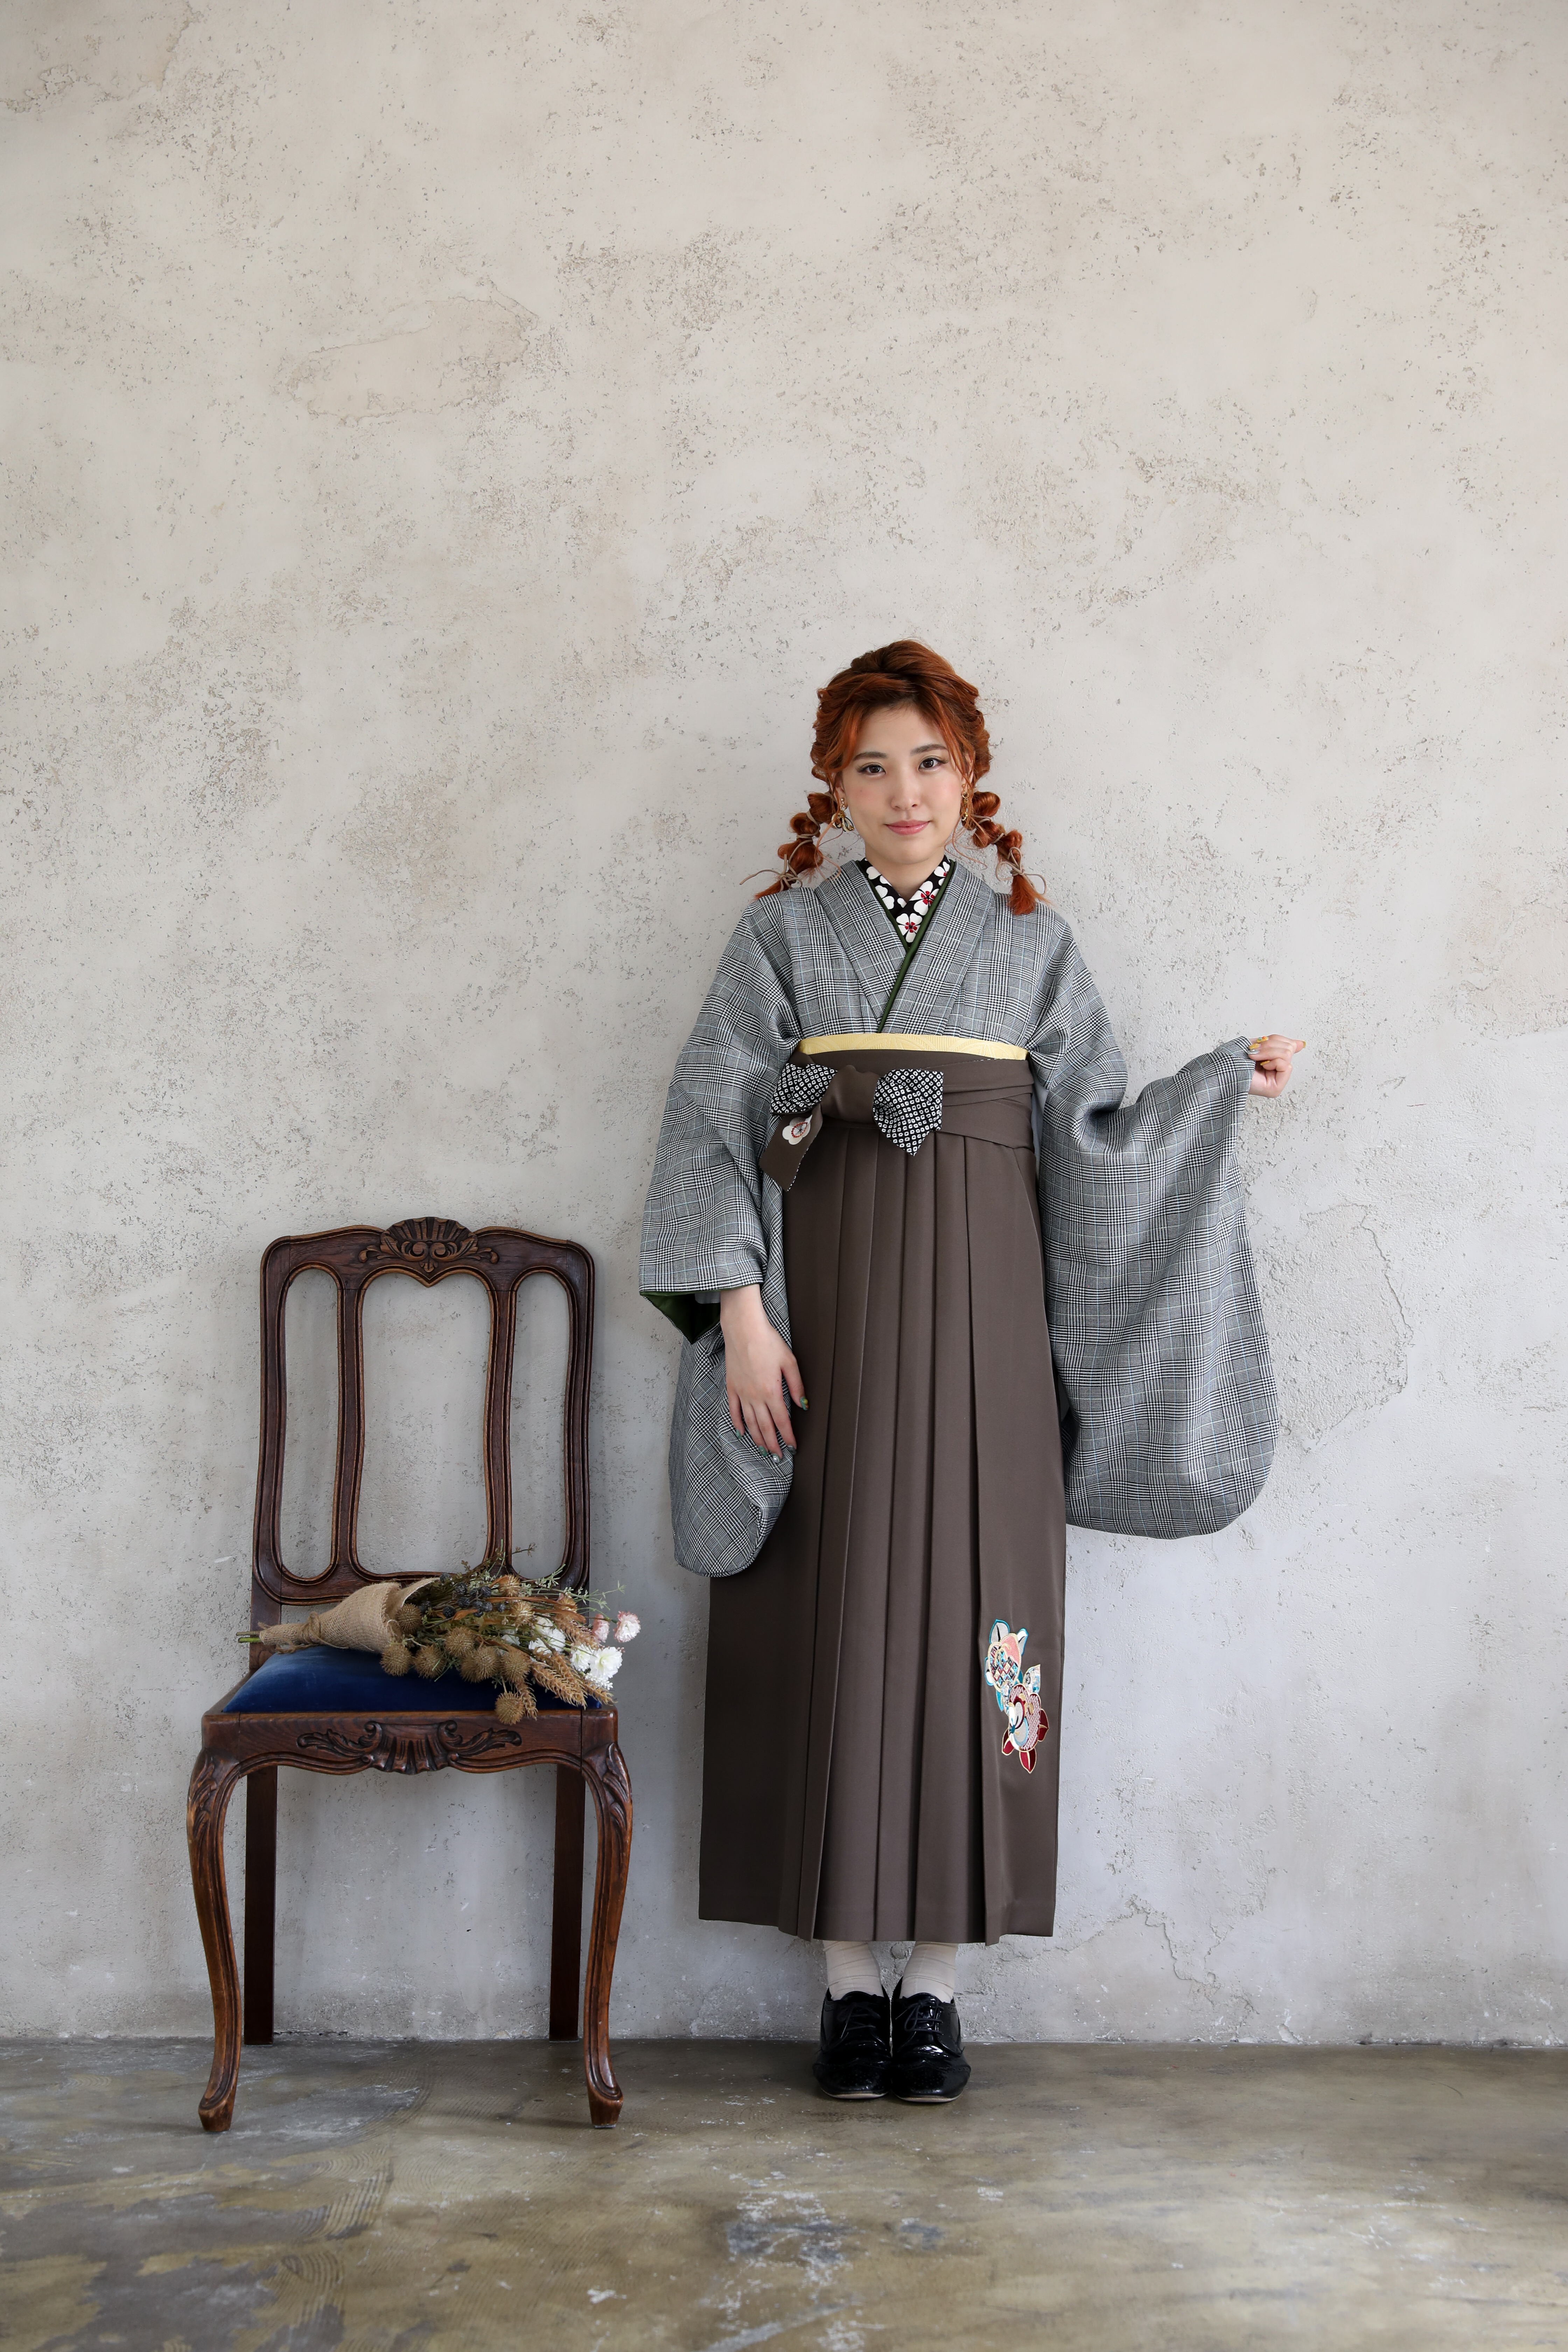 ラフィネモカ（Raffine Mocha）ブランドの、グレンチェックの二尺袖と、グレーの袴の女性用卒業式袴を着用した全身写真